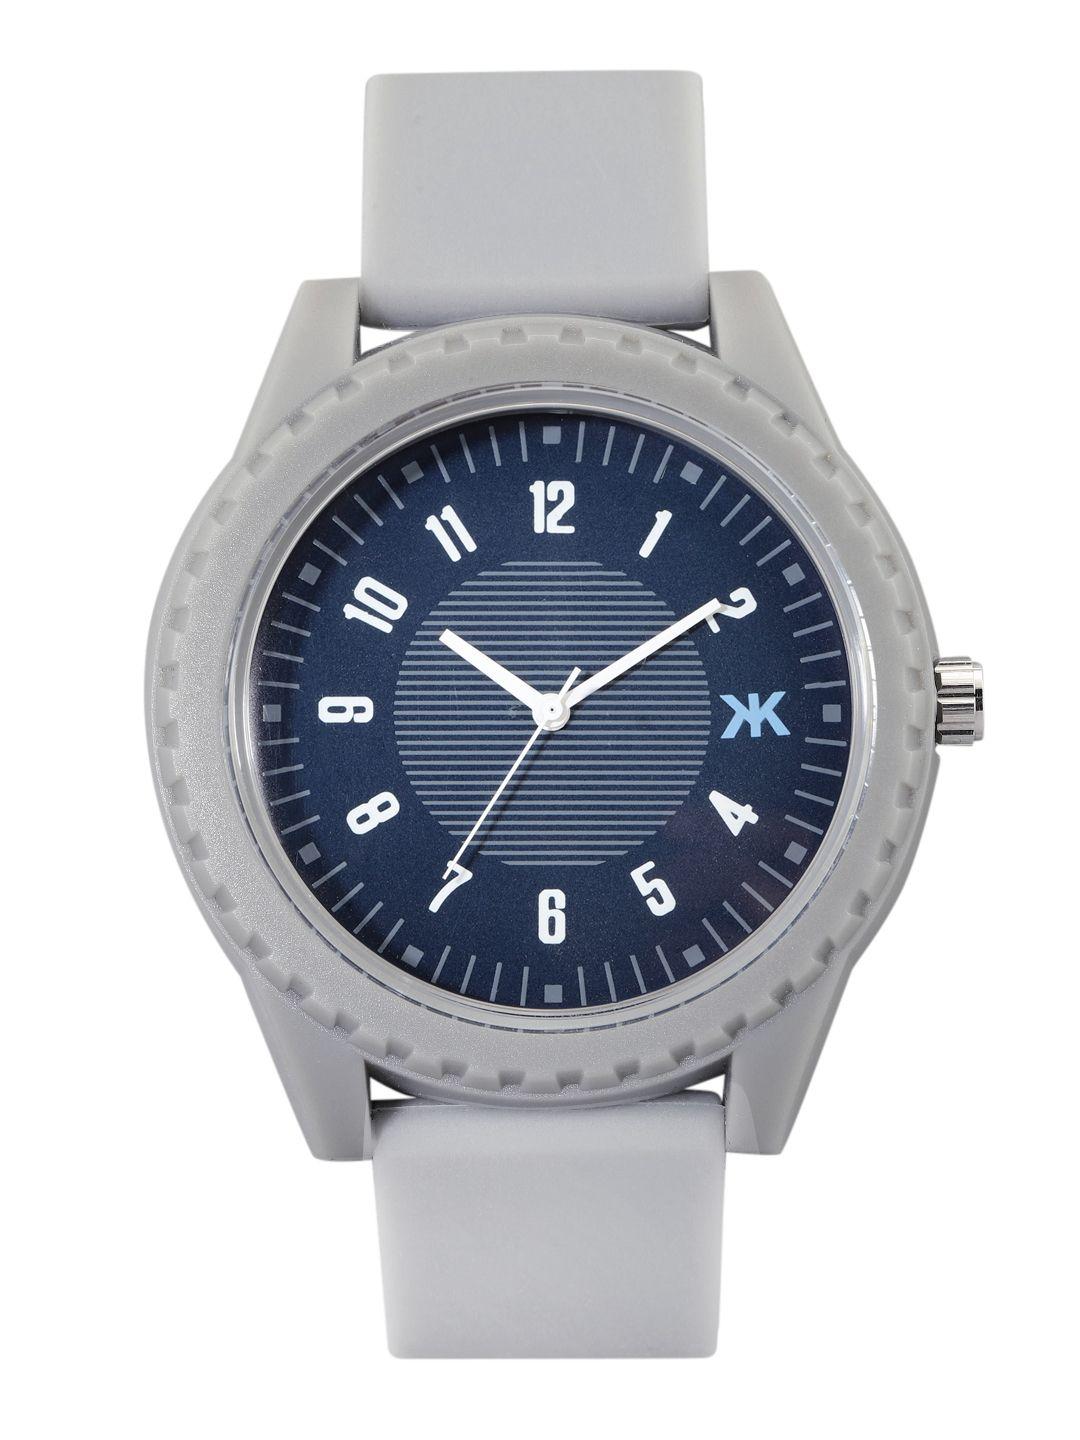 kook n keech unisex blue patterned analogue watch knk222d